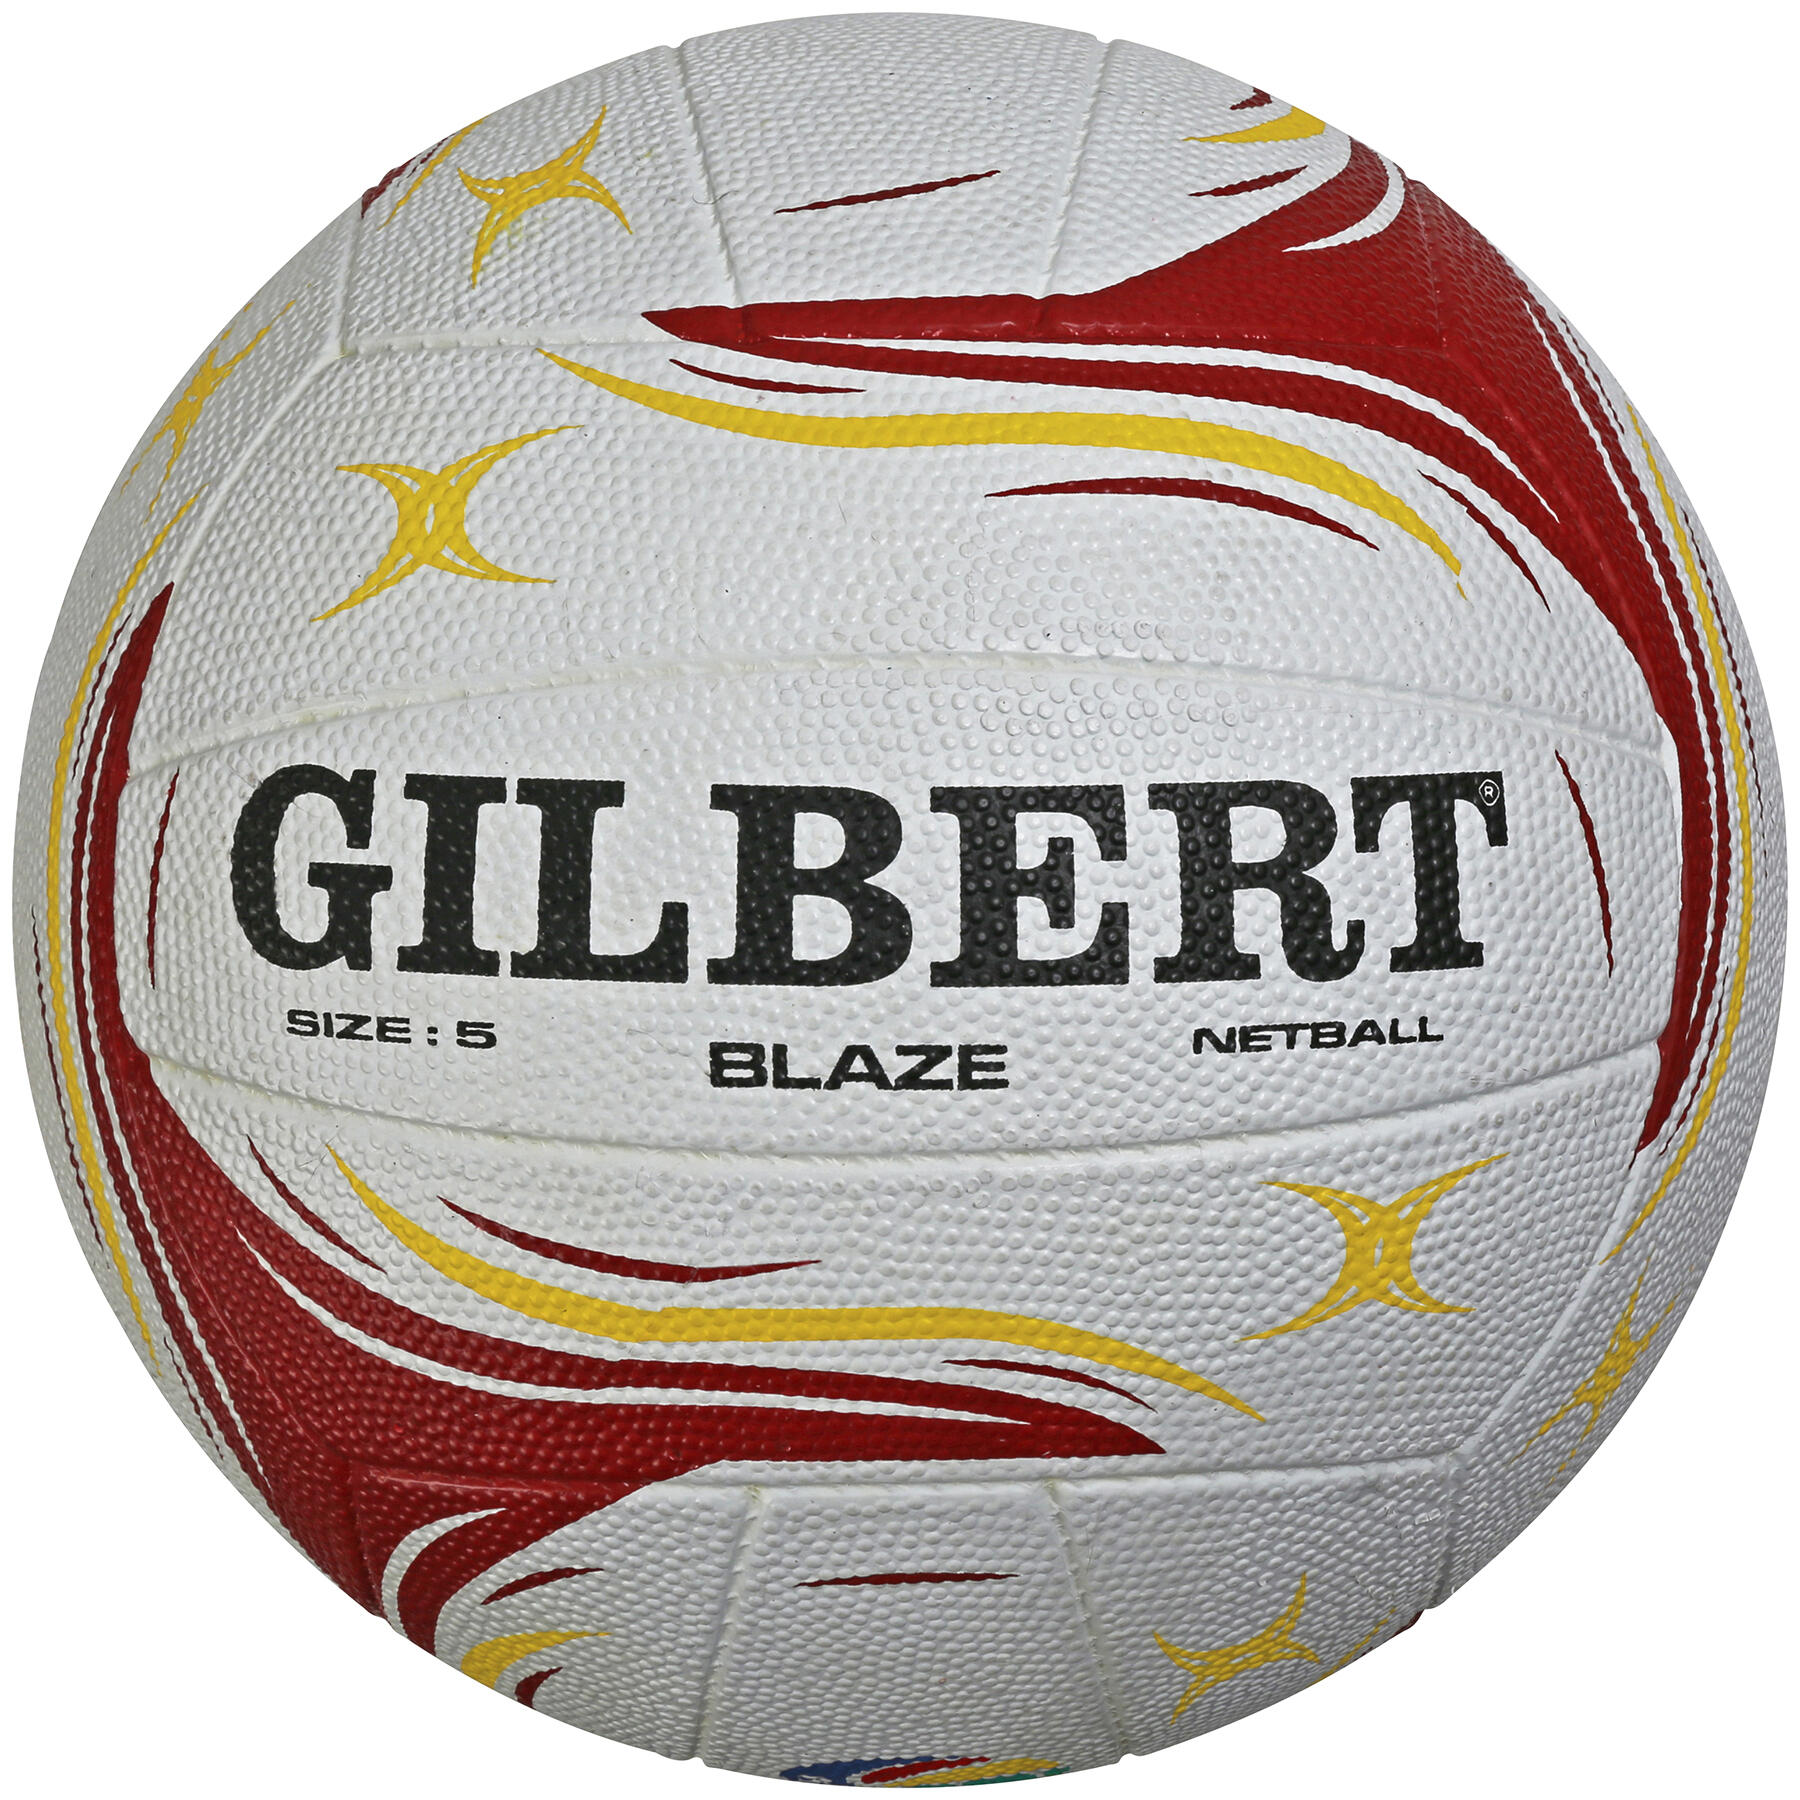 GILBERT Blaze Match Ball, Red